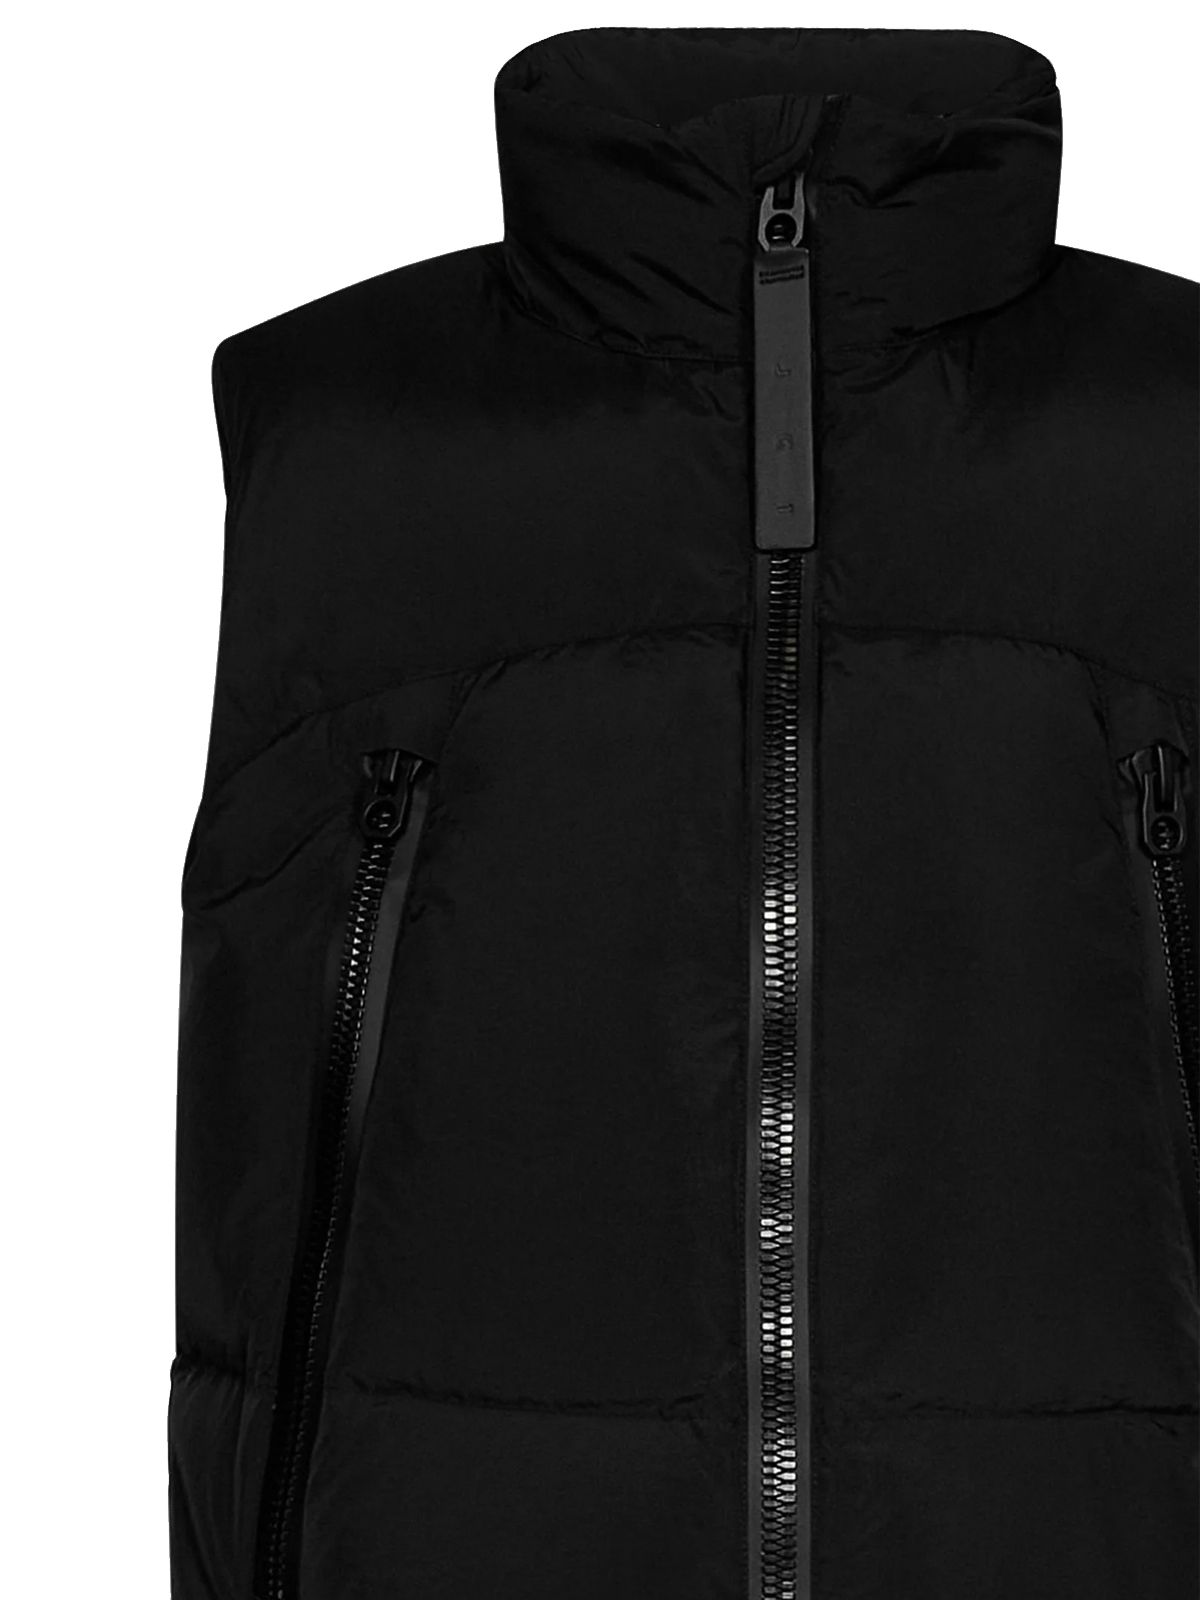 Black padded vest